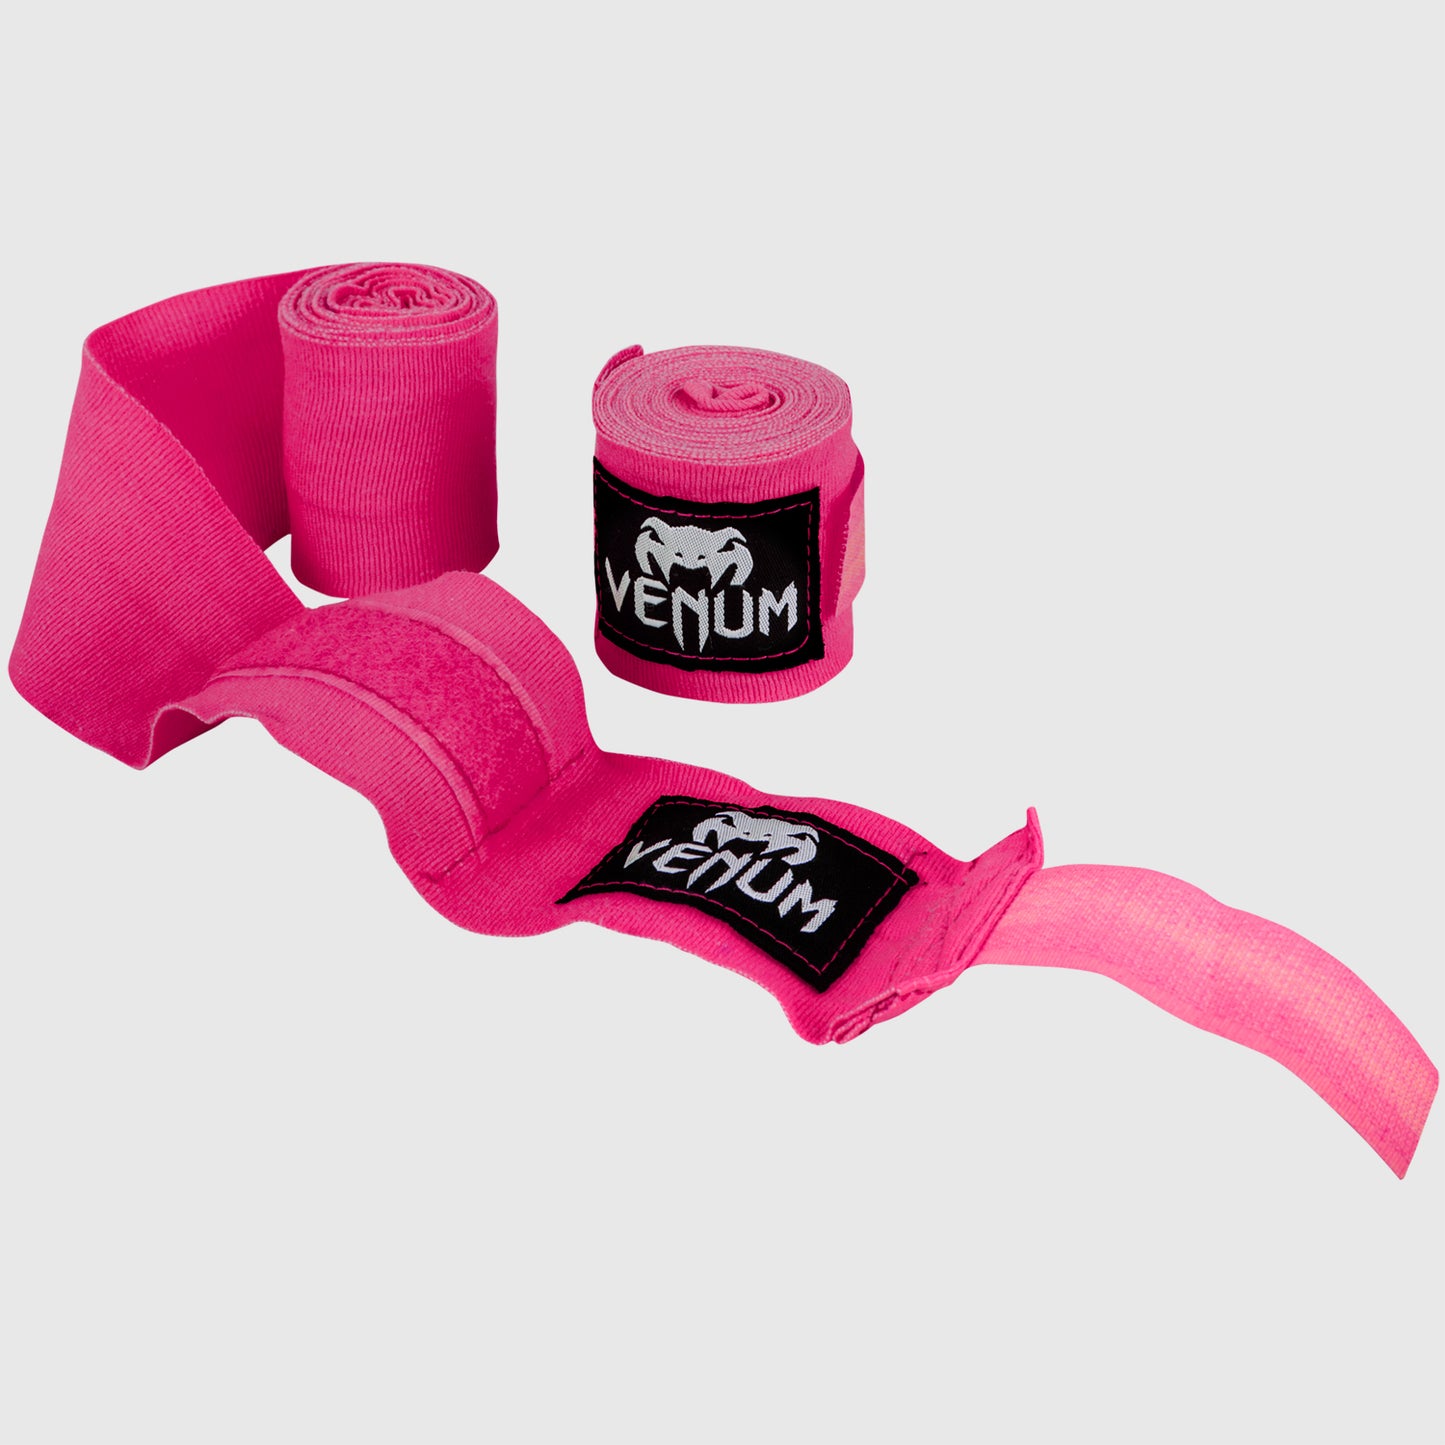 Bandes de boxe Venum Kontact - 2,5 mètres - Rose fluo (Neo) - Bandages de boxe